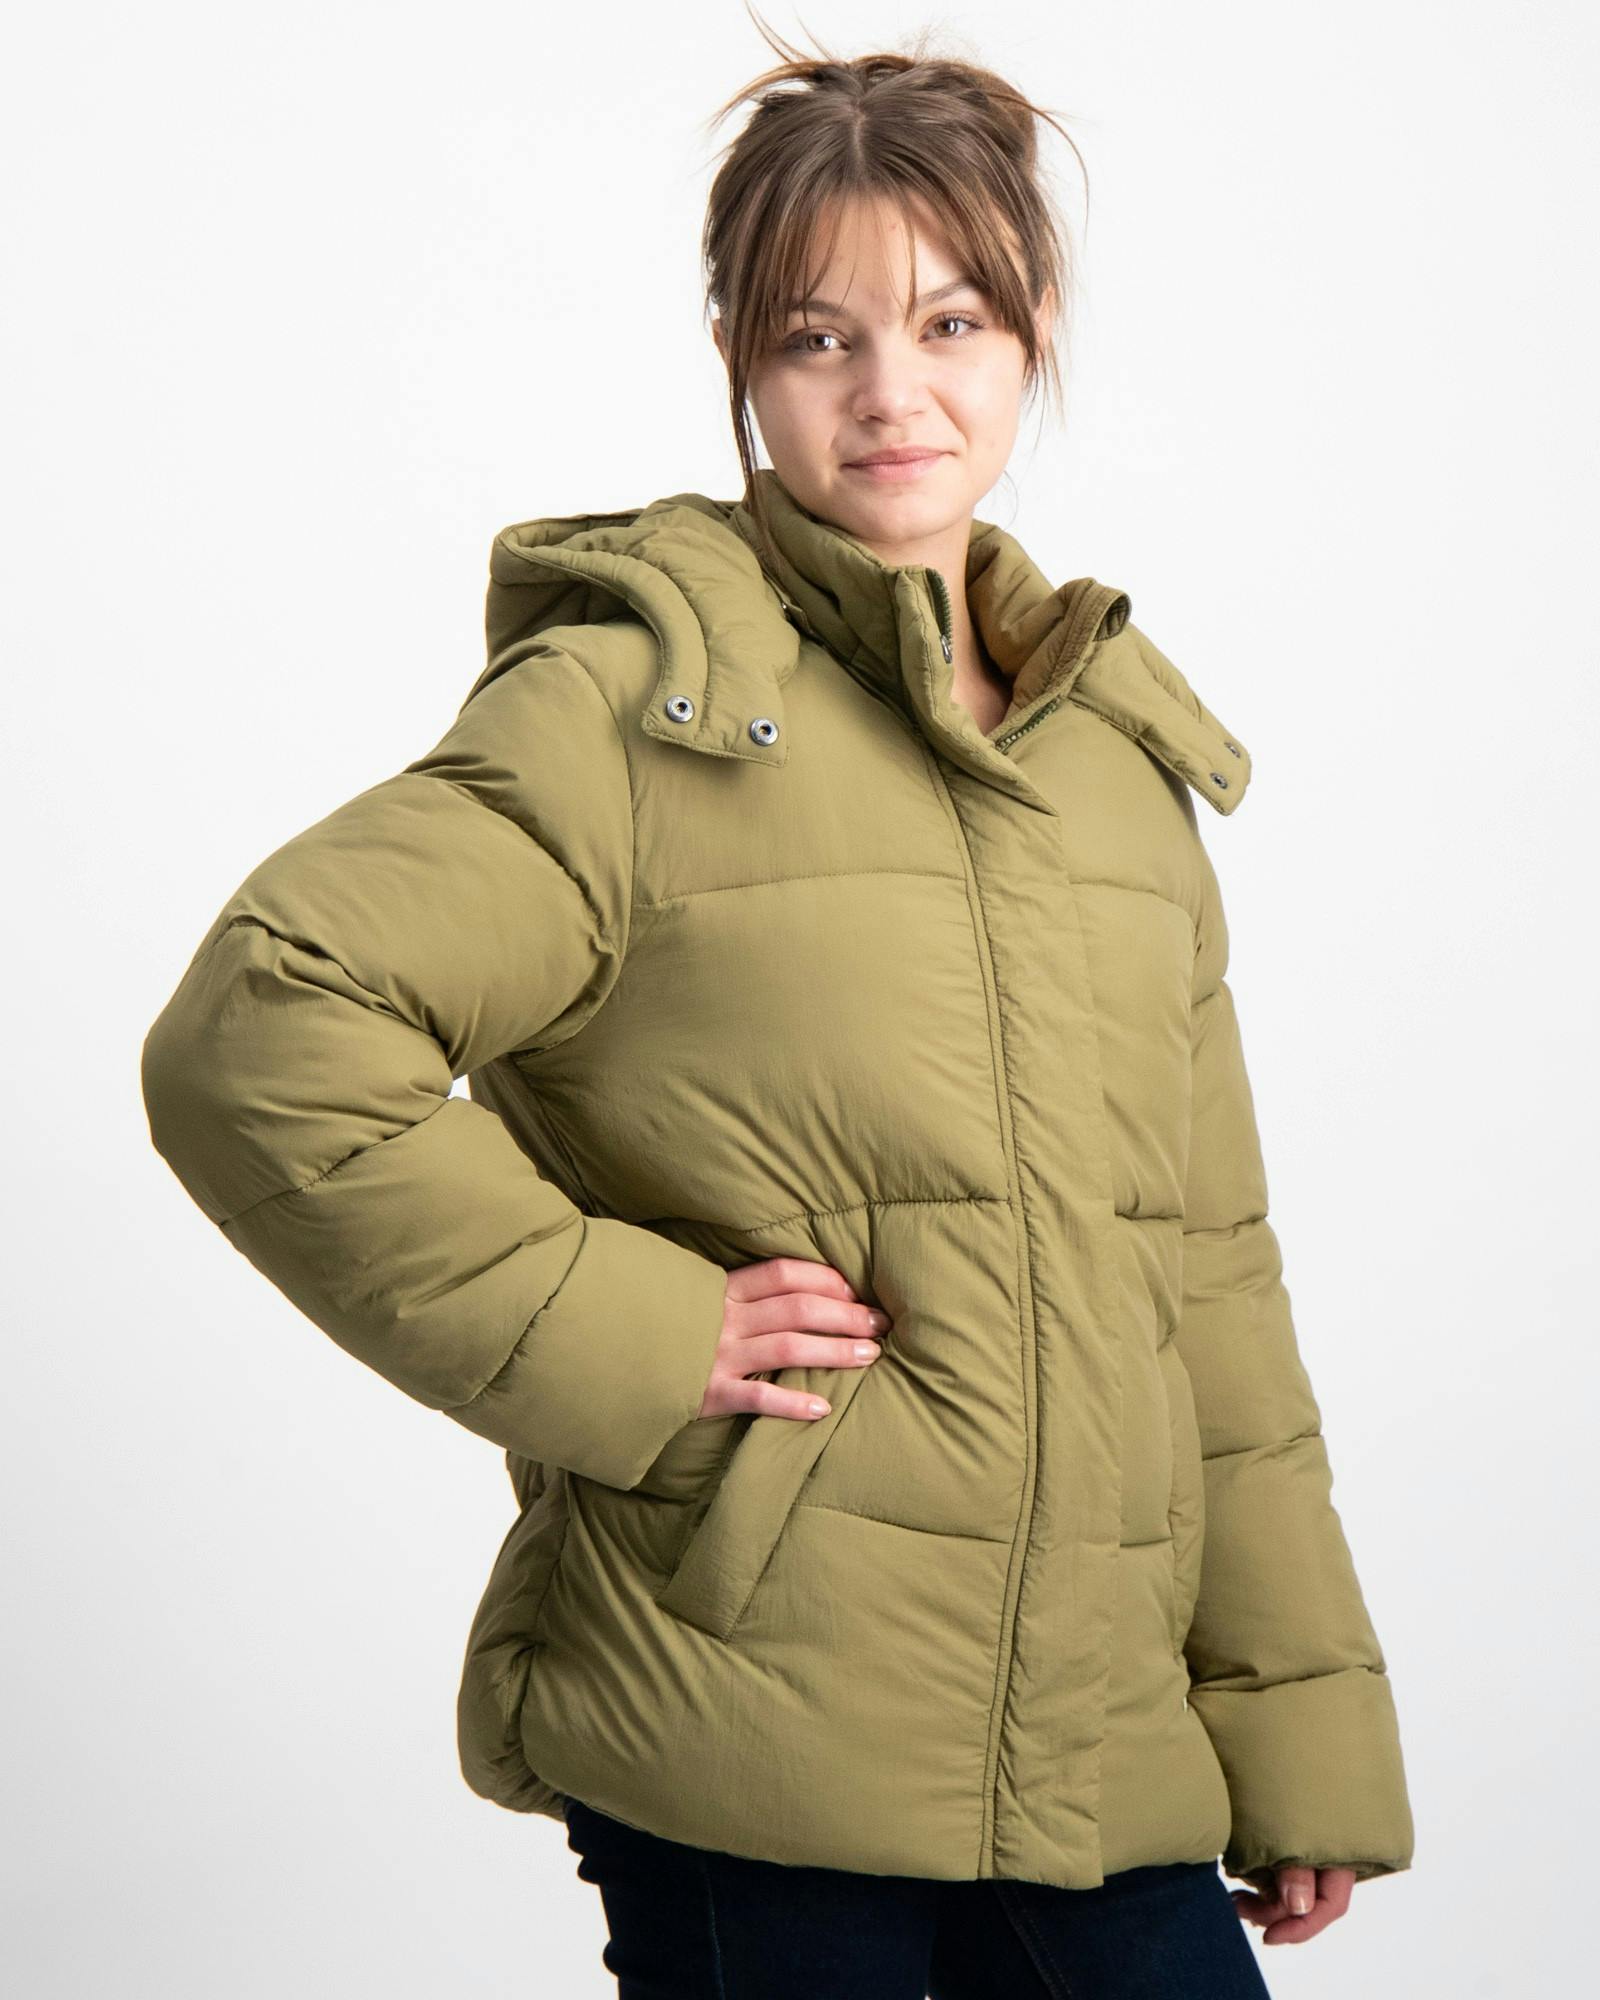 Oversized lightweight puffer jacket